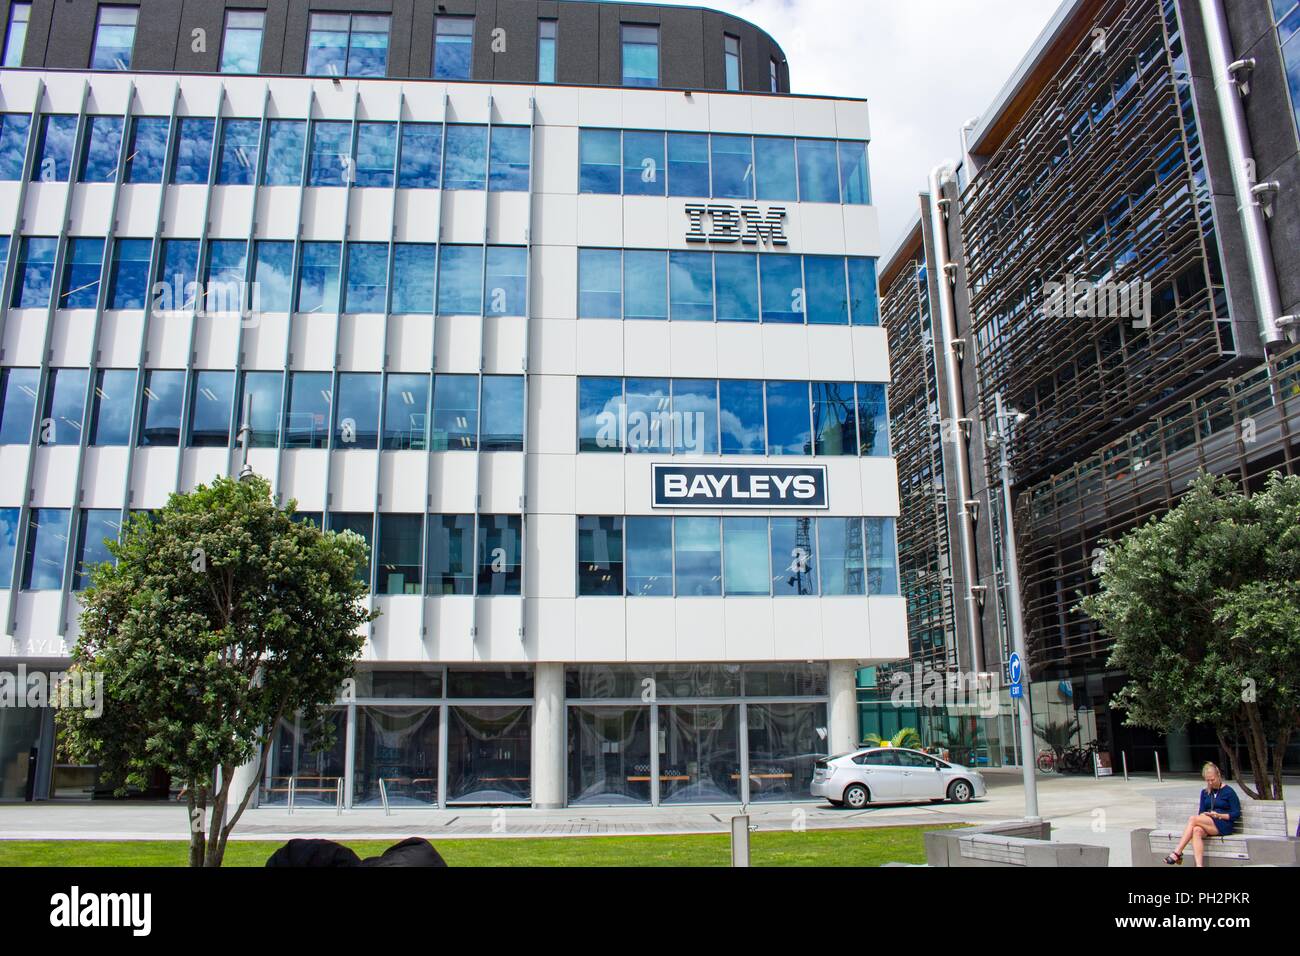 Fassade der regionalen Hauptquartier der International Business Machines (IBM) mit Zeichen für bayleys Realty Group in Auckland, Neuseeland, 26. Februar 2018. () Stockfoto